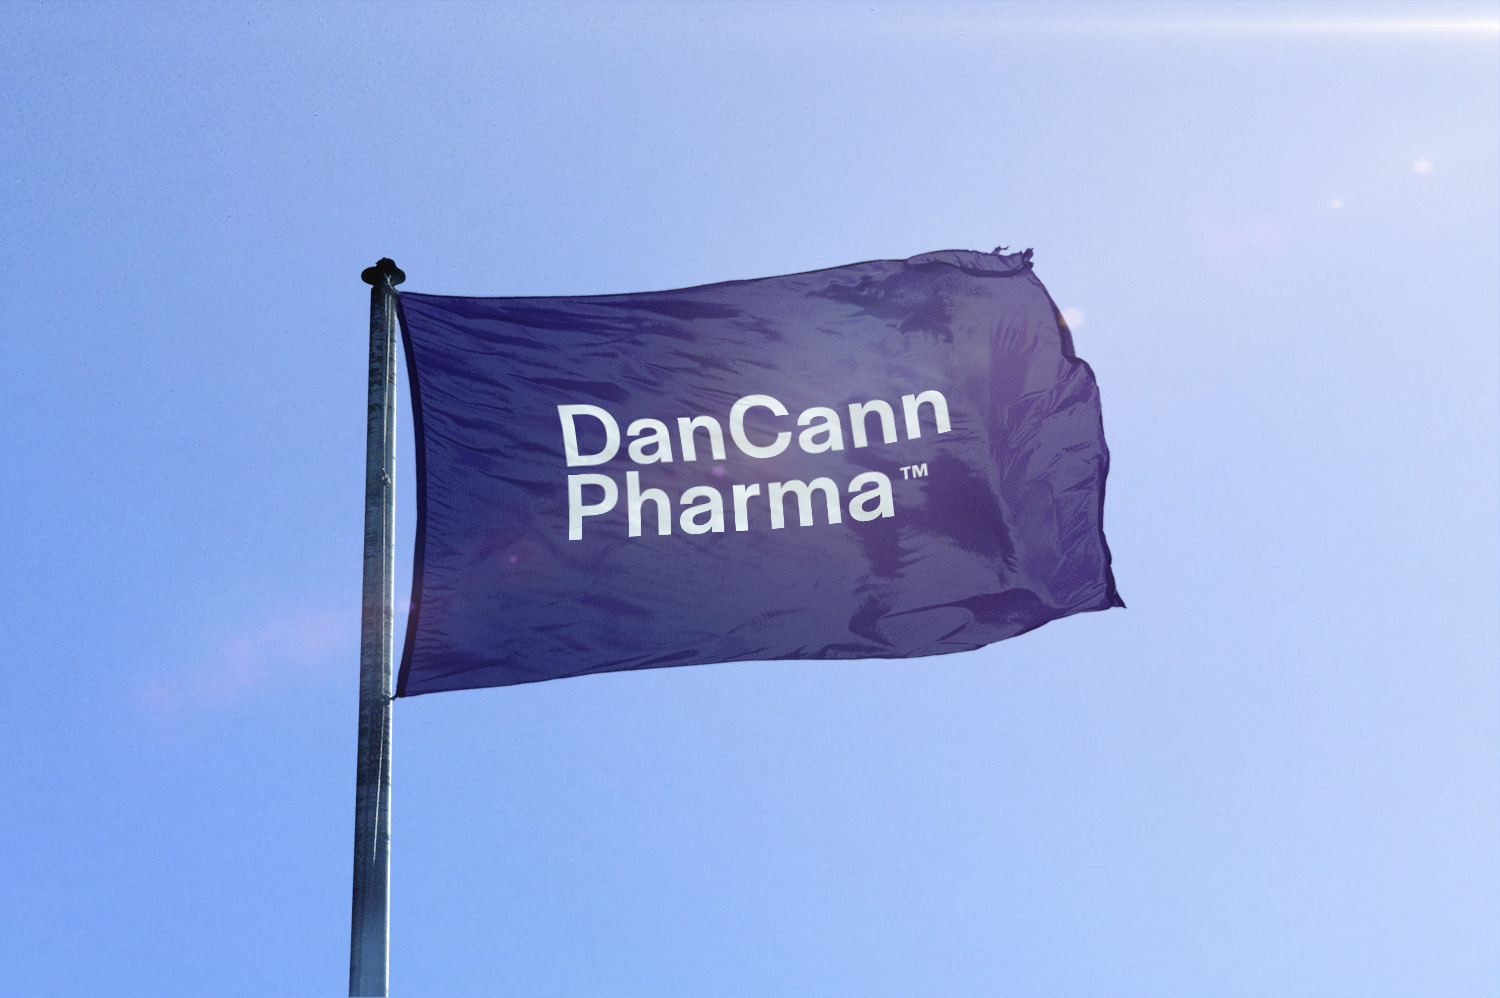 DanCann er tilfredse med udviklingen i datterselskab